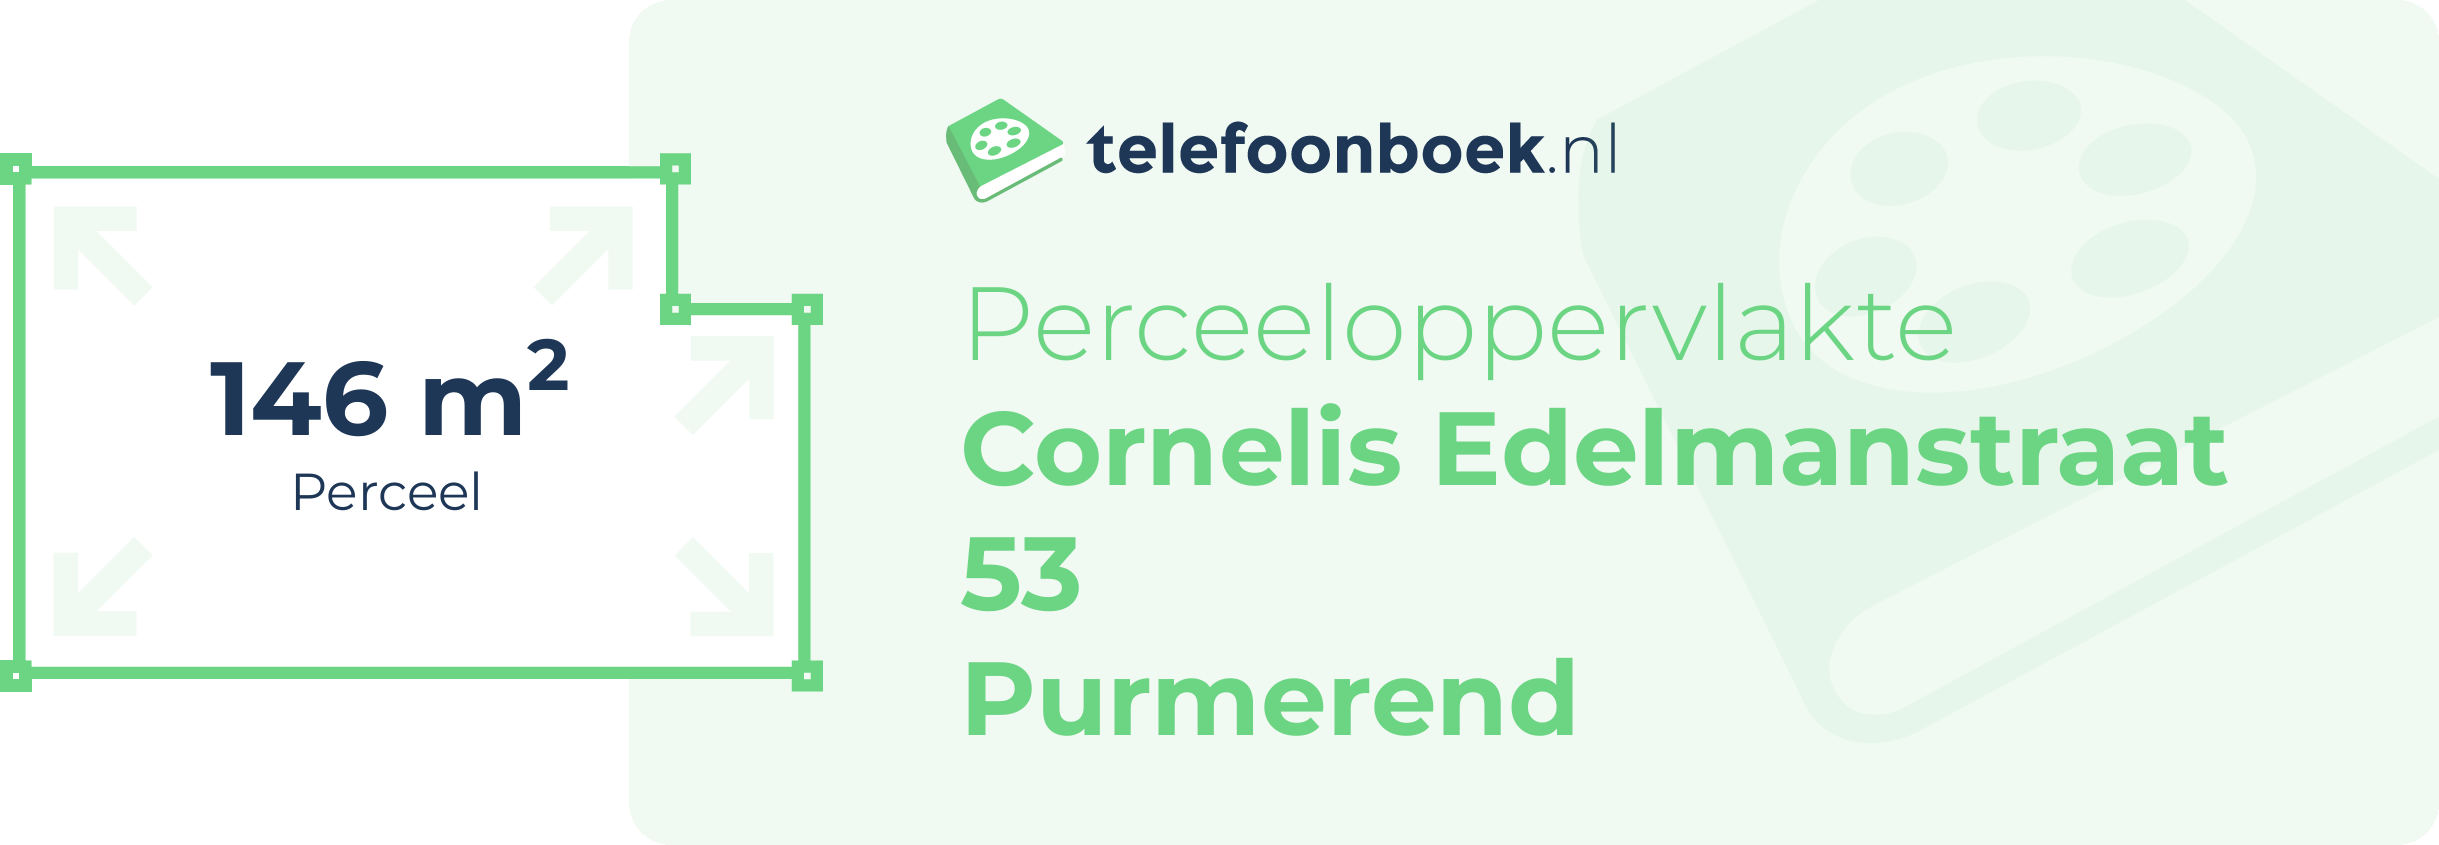 Perceeloppervlakte Cornelis Edelmanstraat 53 Purmerend